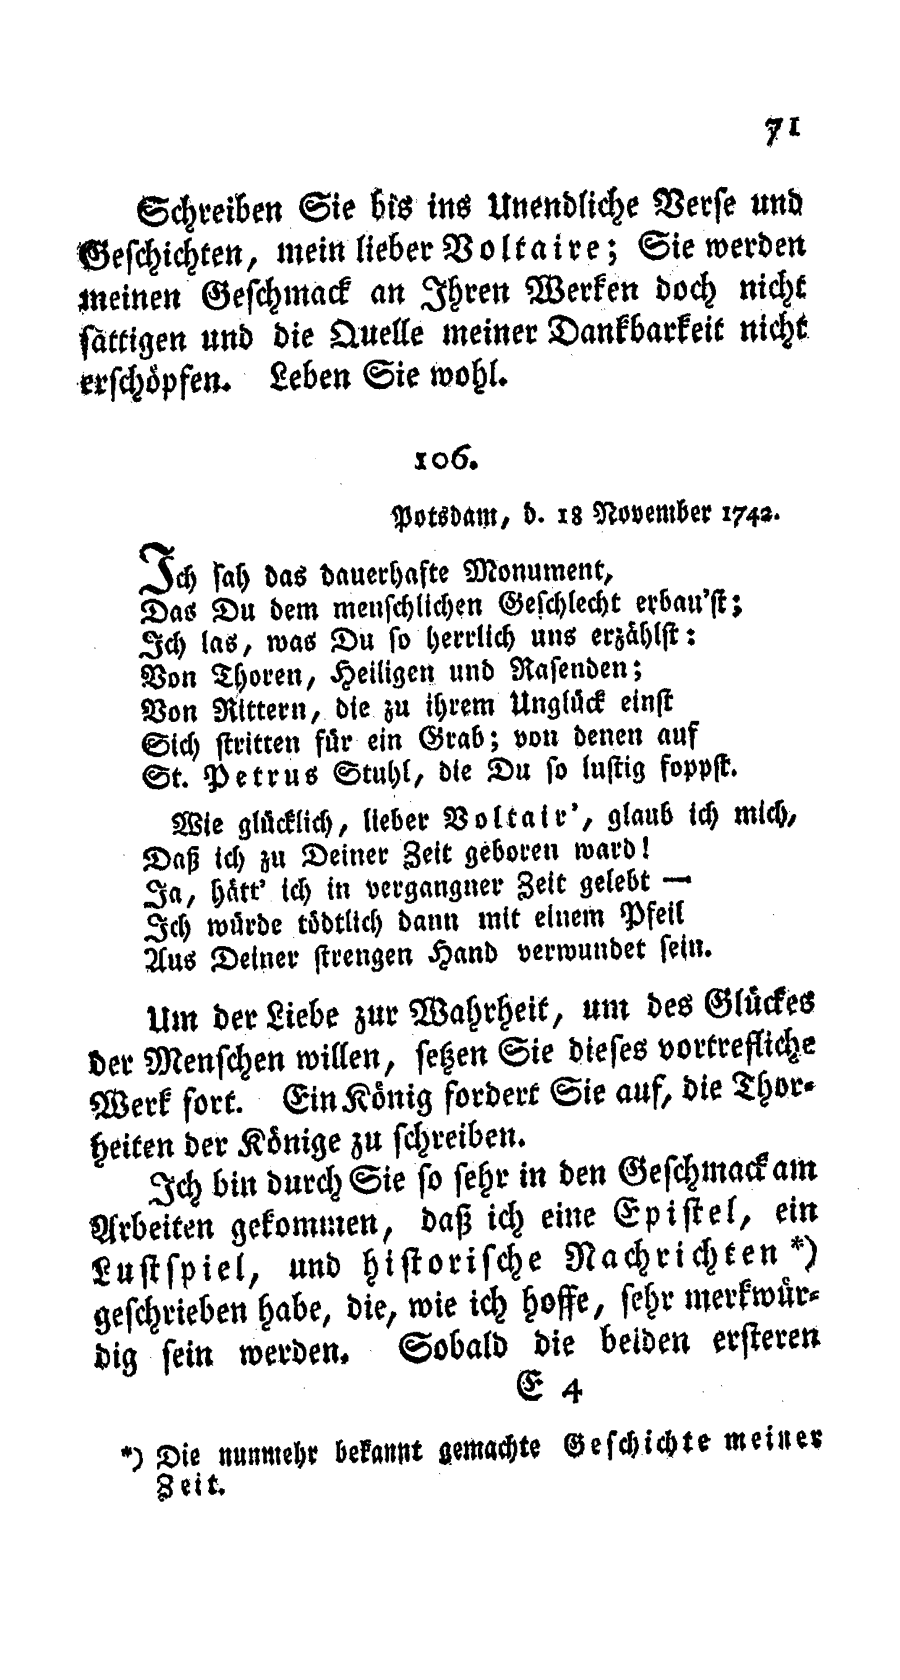 S. 71, Obj. 2